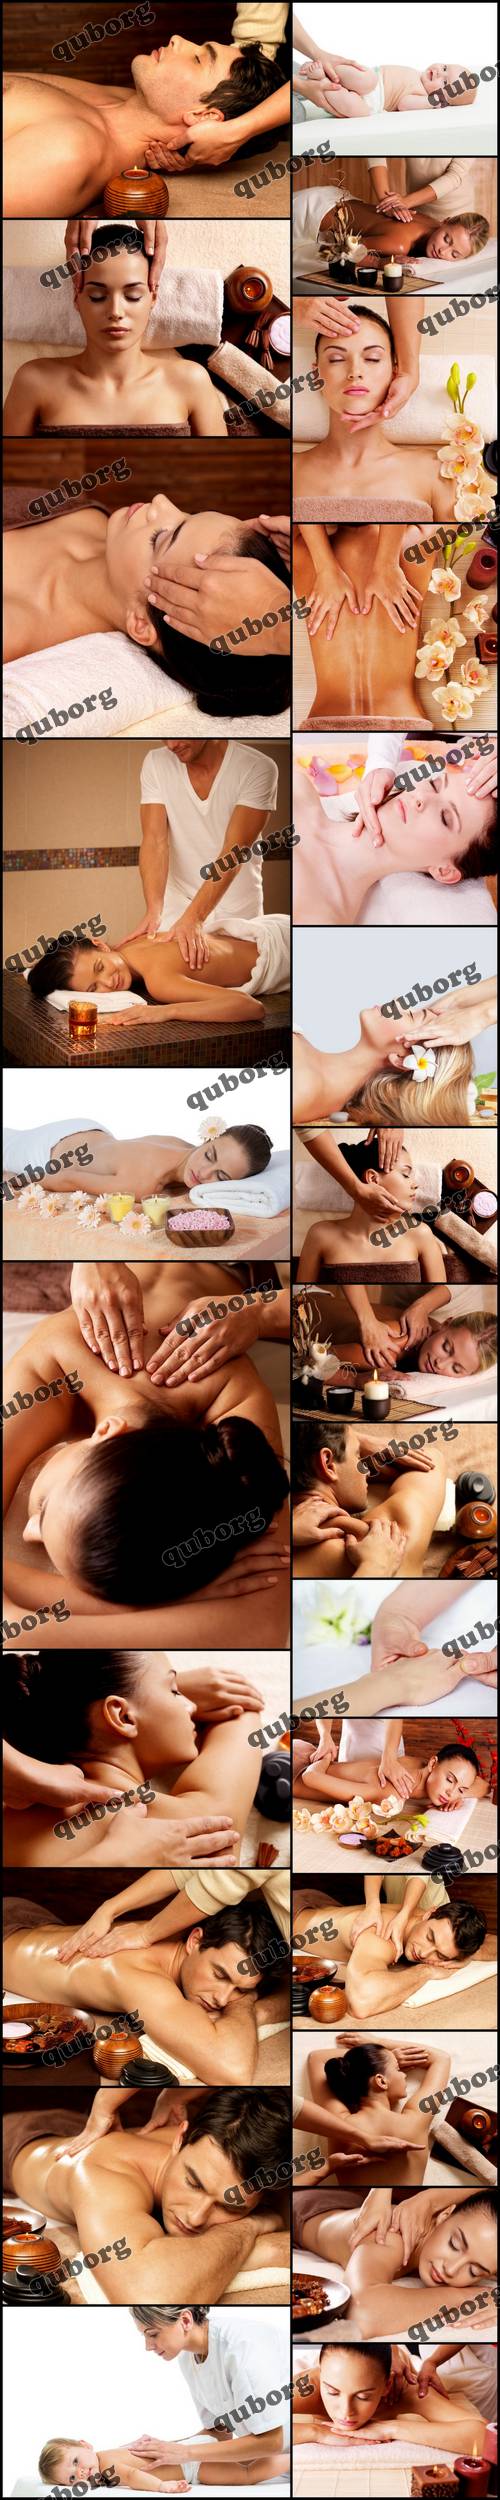 Stock Photos - Masseur Doing Massage